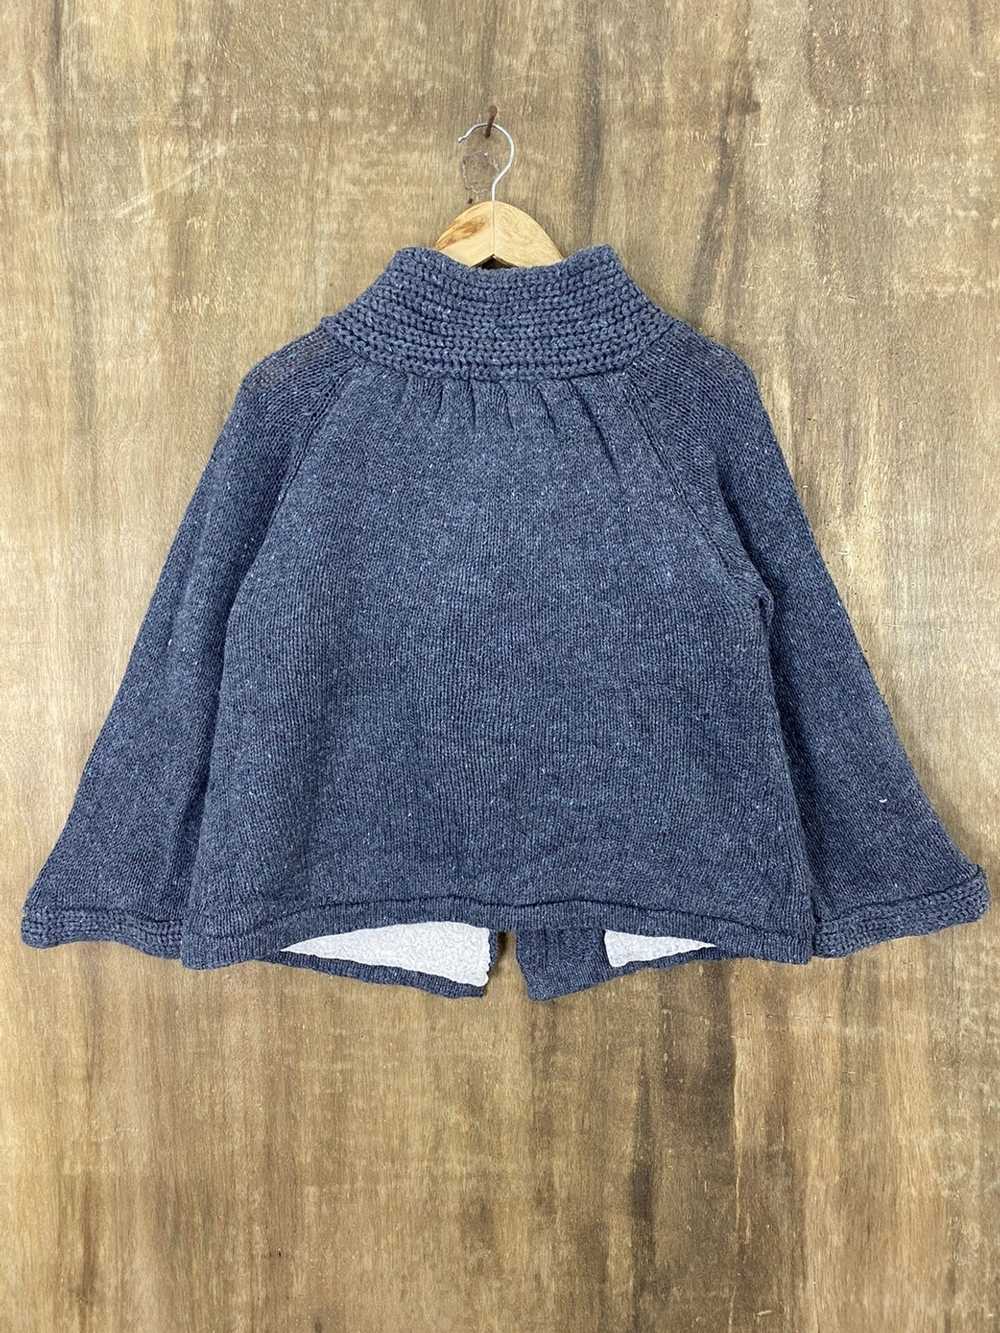 Aran Isles Knitwear × Cardigan × Japanese Brand M… - image 4